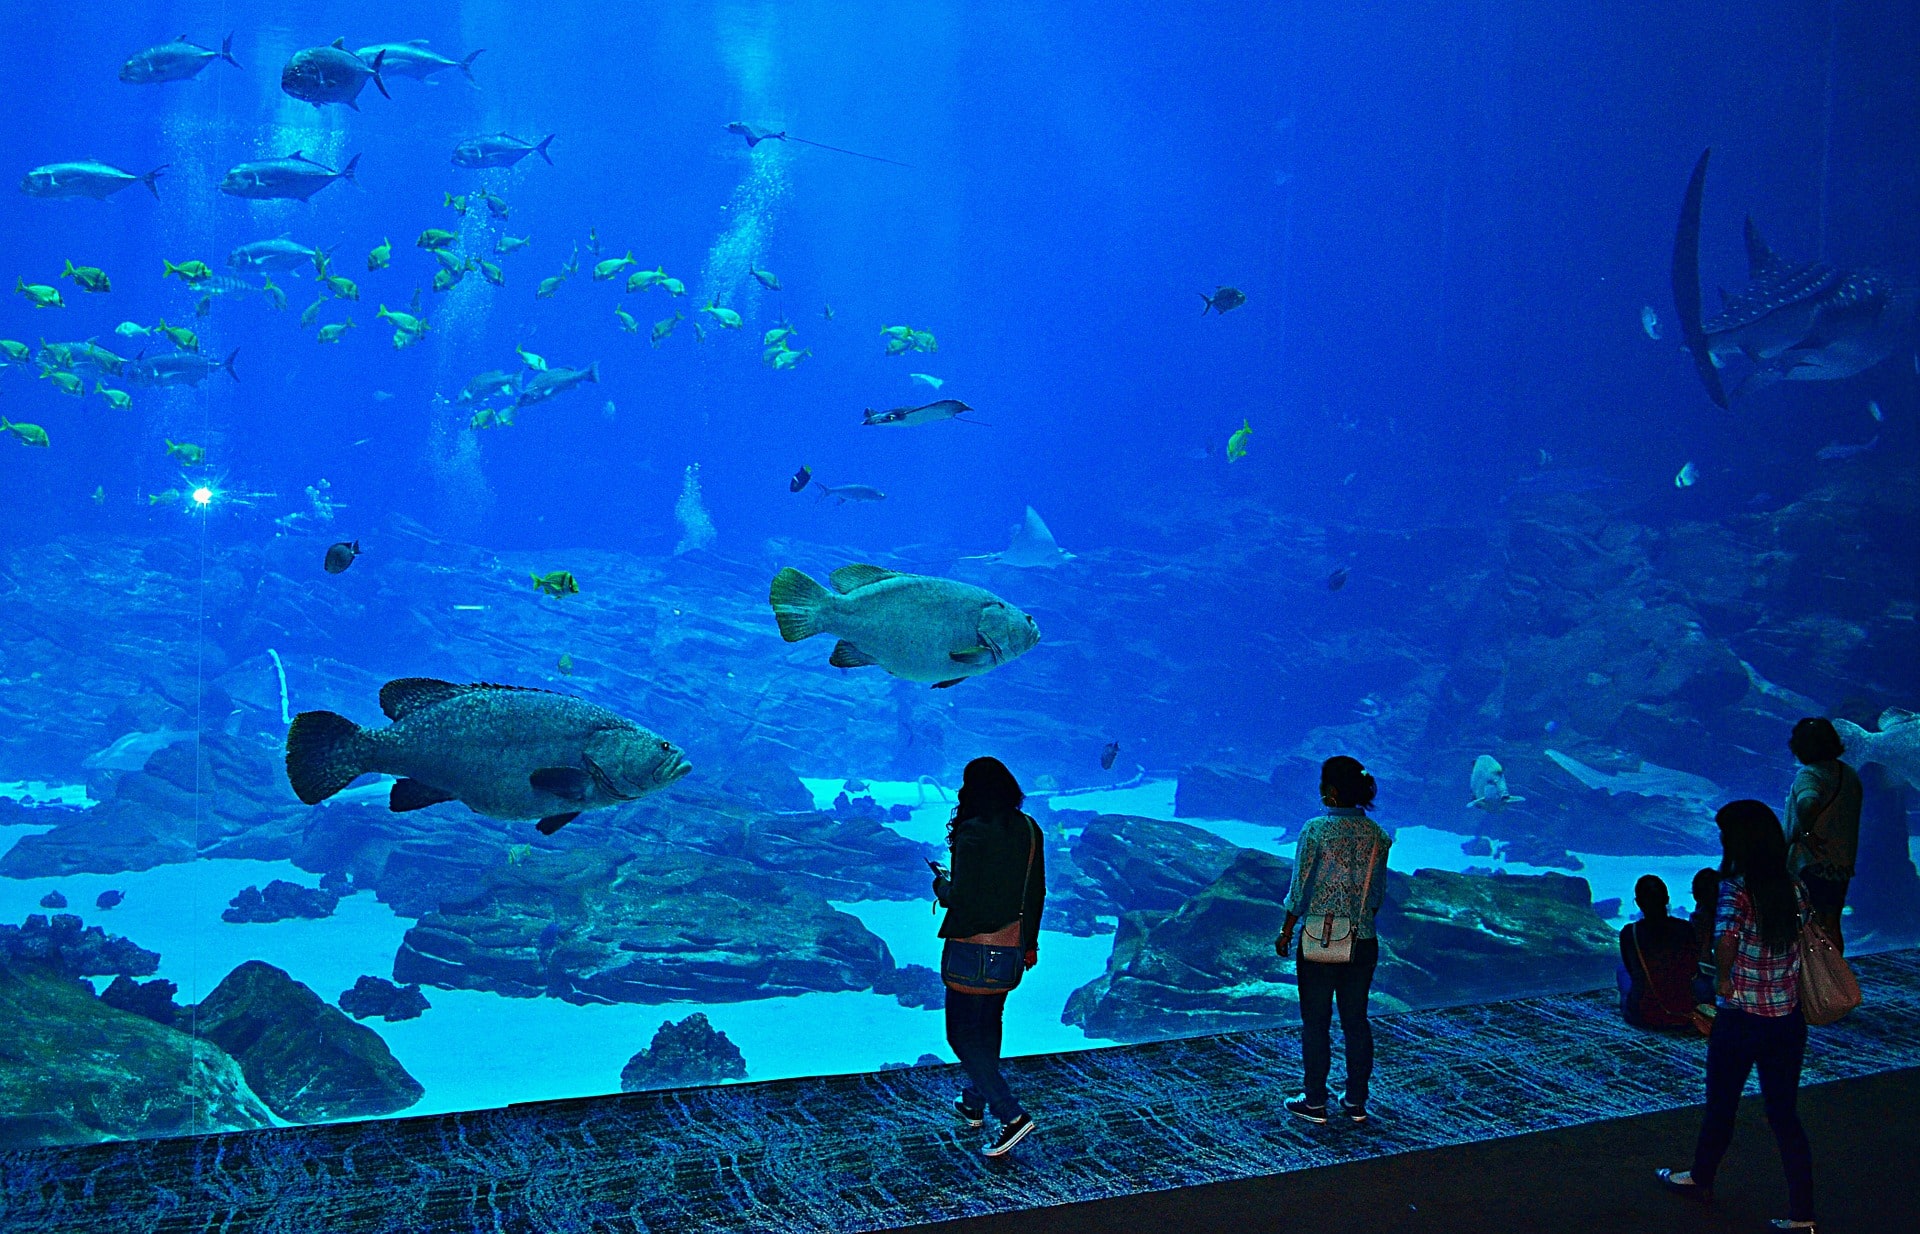 Atlanta Georgia Aquarium Opening Time And Tickets Price - Atlanta Georgia Aquarium Opening Time AnD Tickets Price